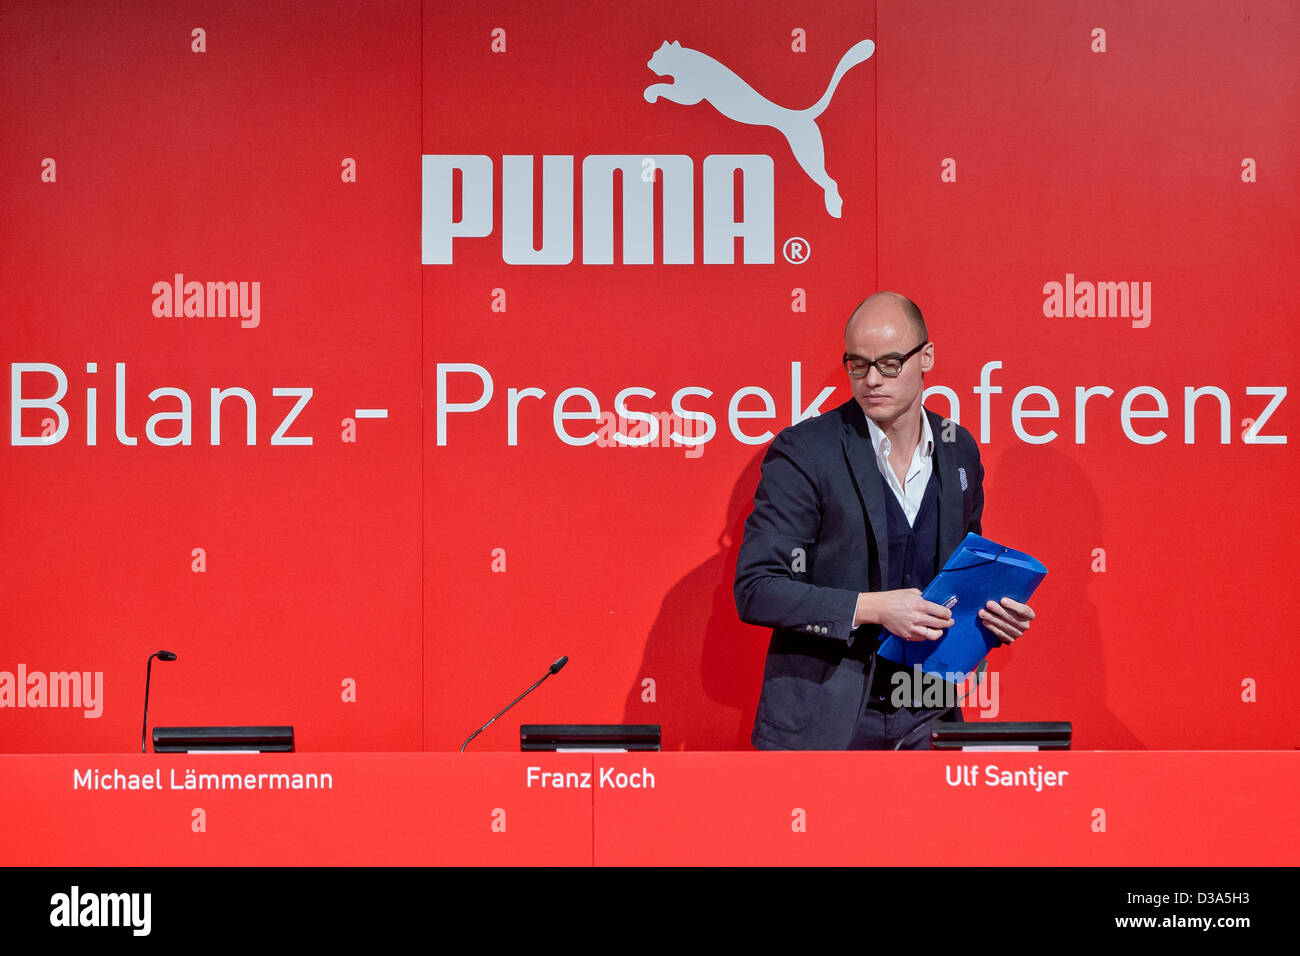 PUMA SE Vorsitzender des Vorstands, Franz Koch, spricht auf der  Bilanz-Pressekonferenz Puma in Herzogenaurach, Deutschland, 14. Februar  2013. Foto: DANIEL KARMANN Stockfotografie - Alamy